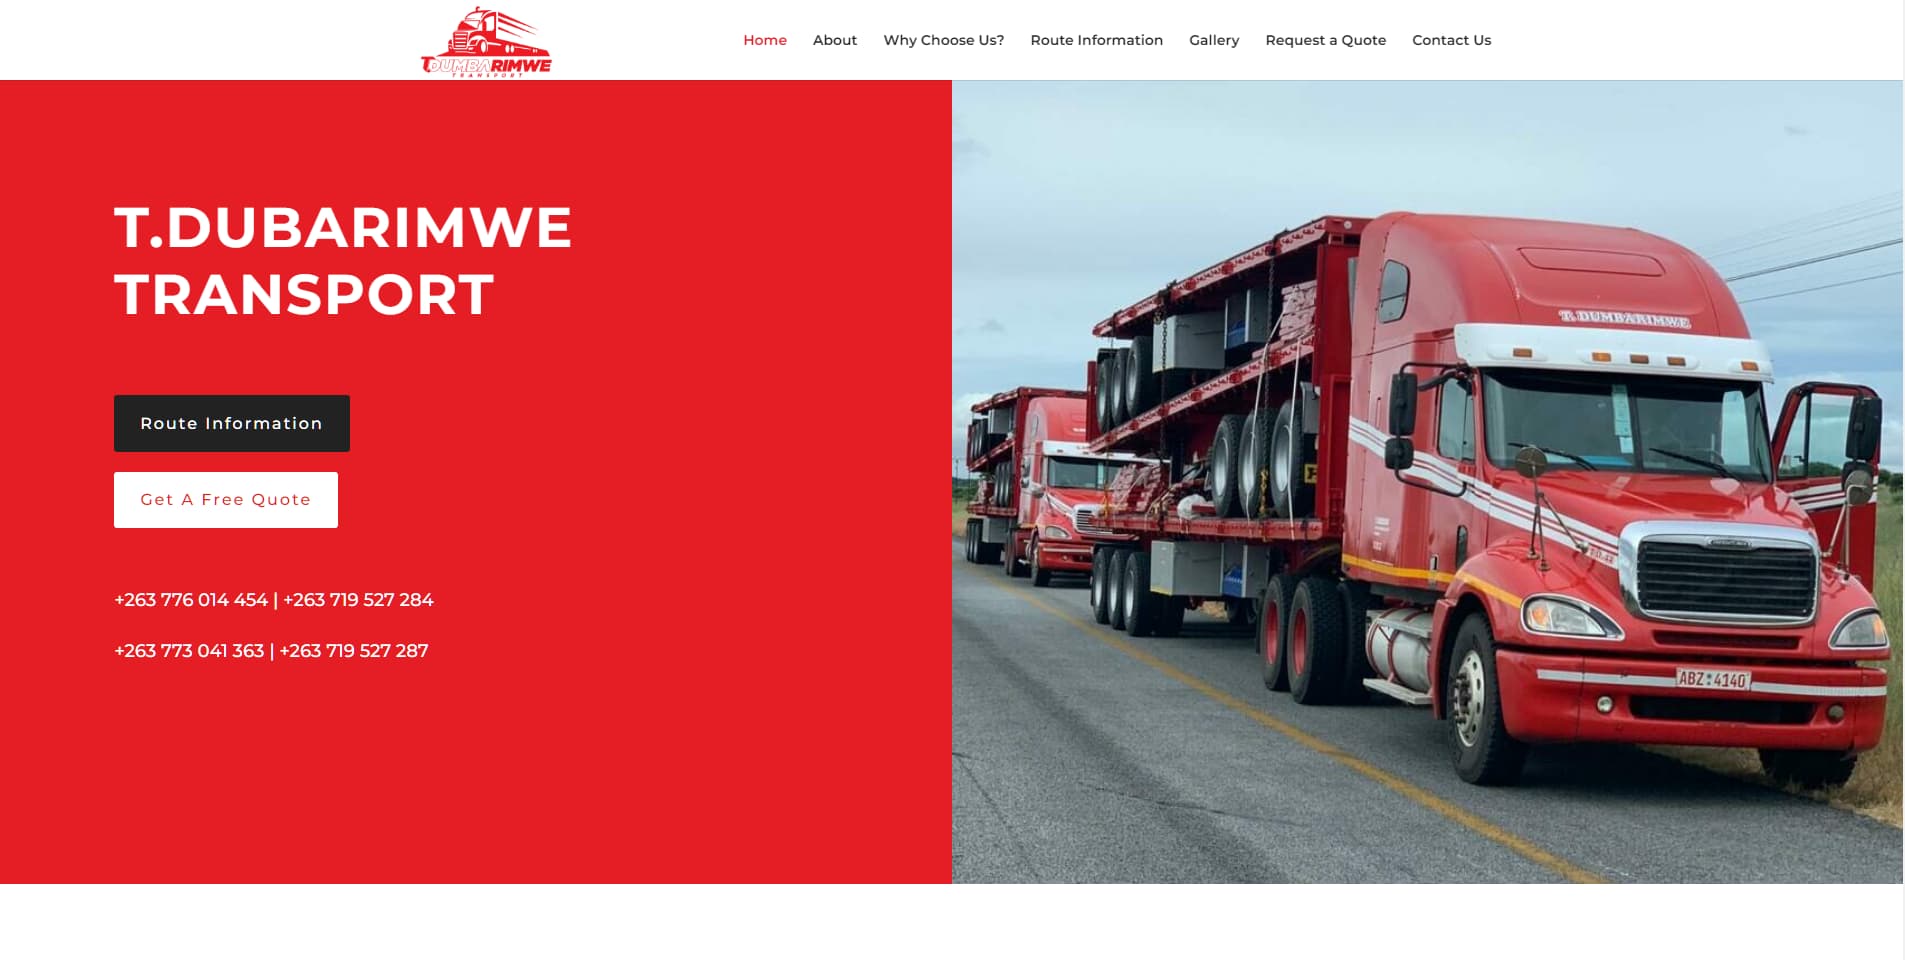 website design zimbabwe for tdubarimwe transport